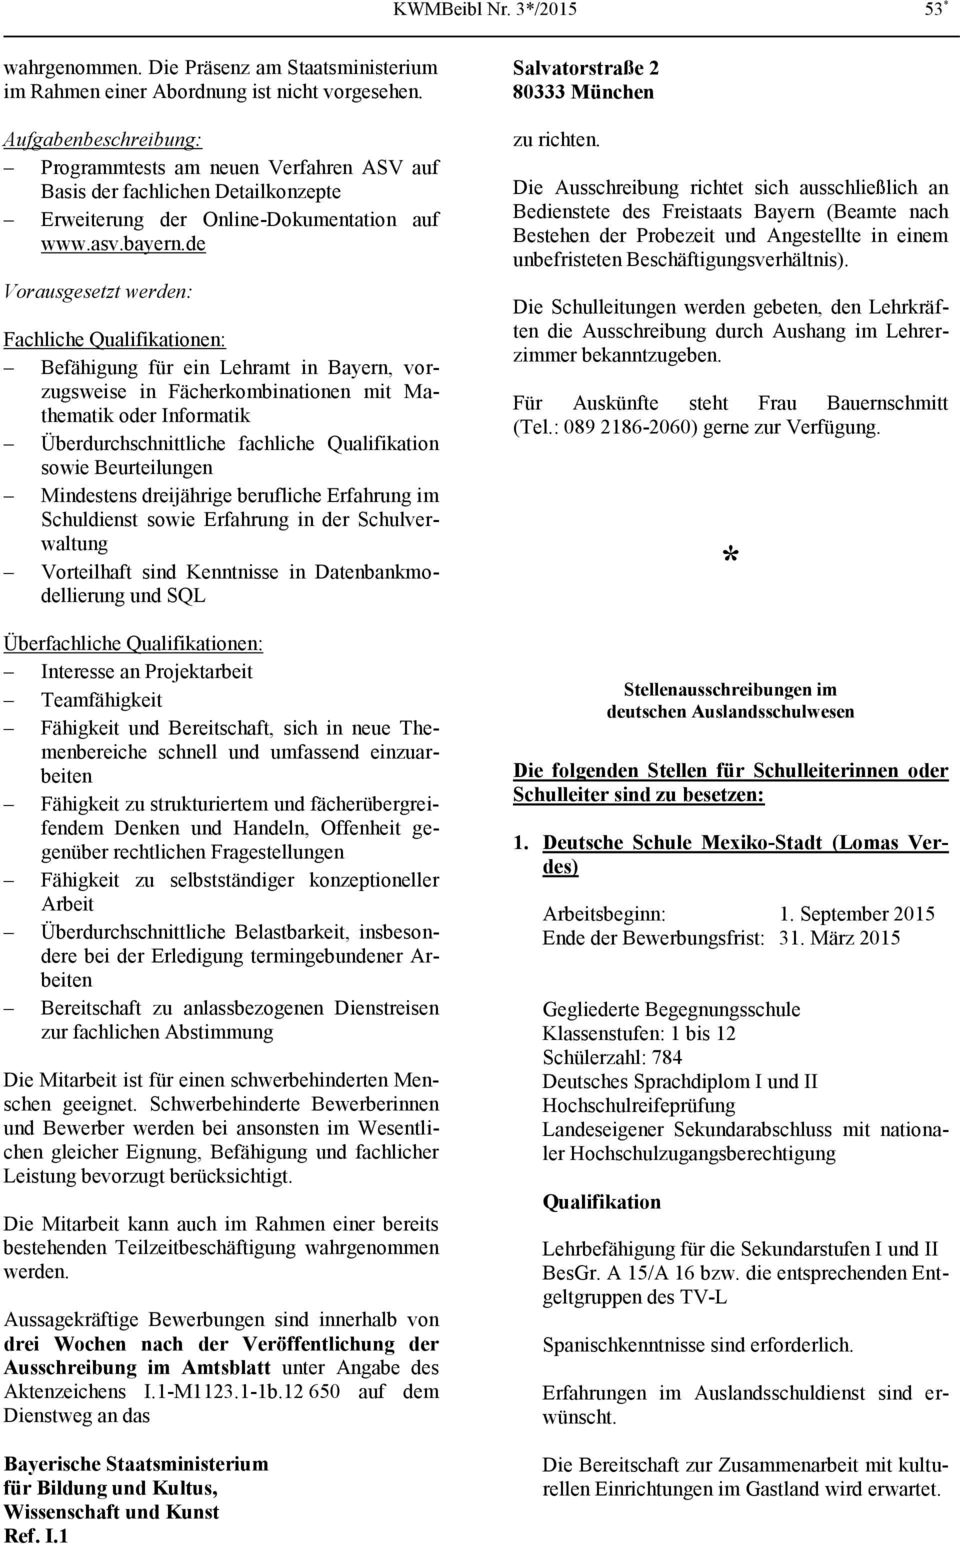 de Vorausgesetzt werden: Fachliche Qualifikationen: Befähigung für ein Lehramt in Bayern, vorzugsweise in Fächerkombinationen mit Mathematik oder Informatik Überdurchschnittliche fachliche